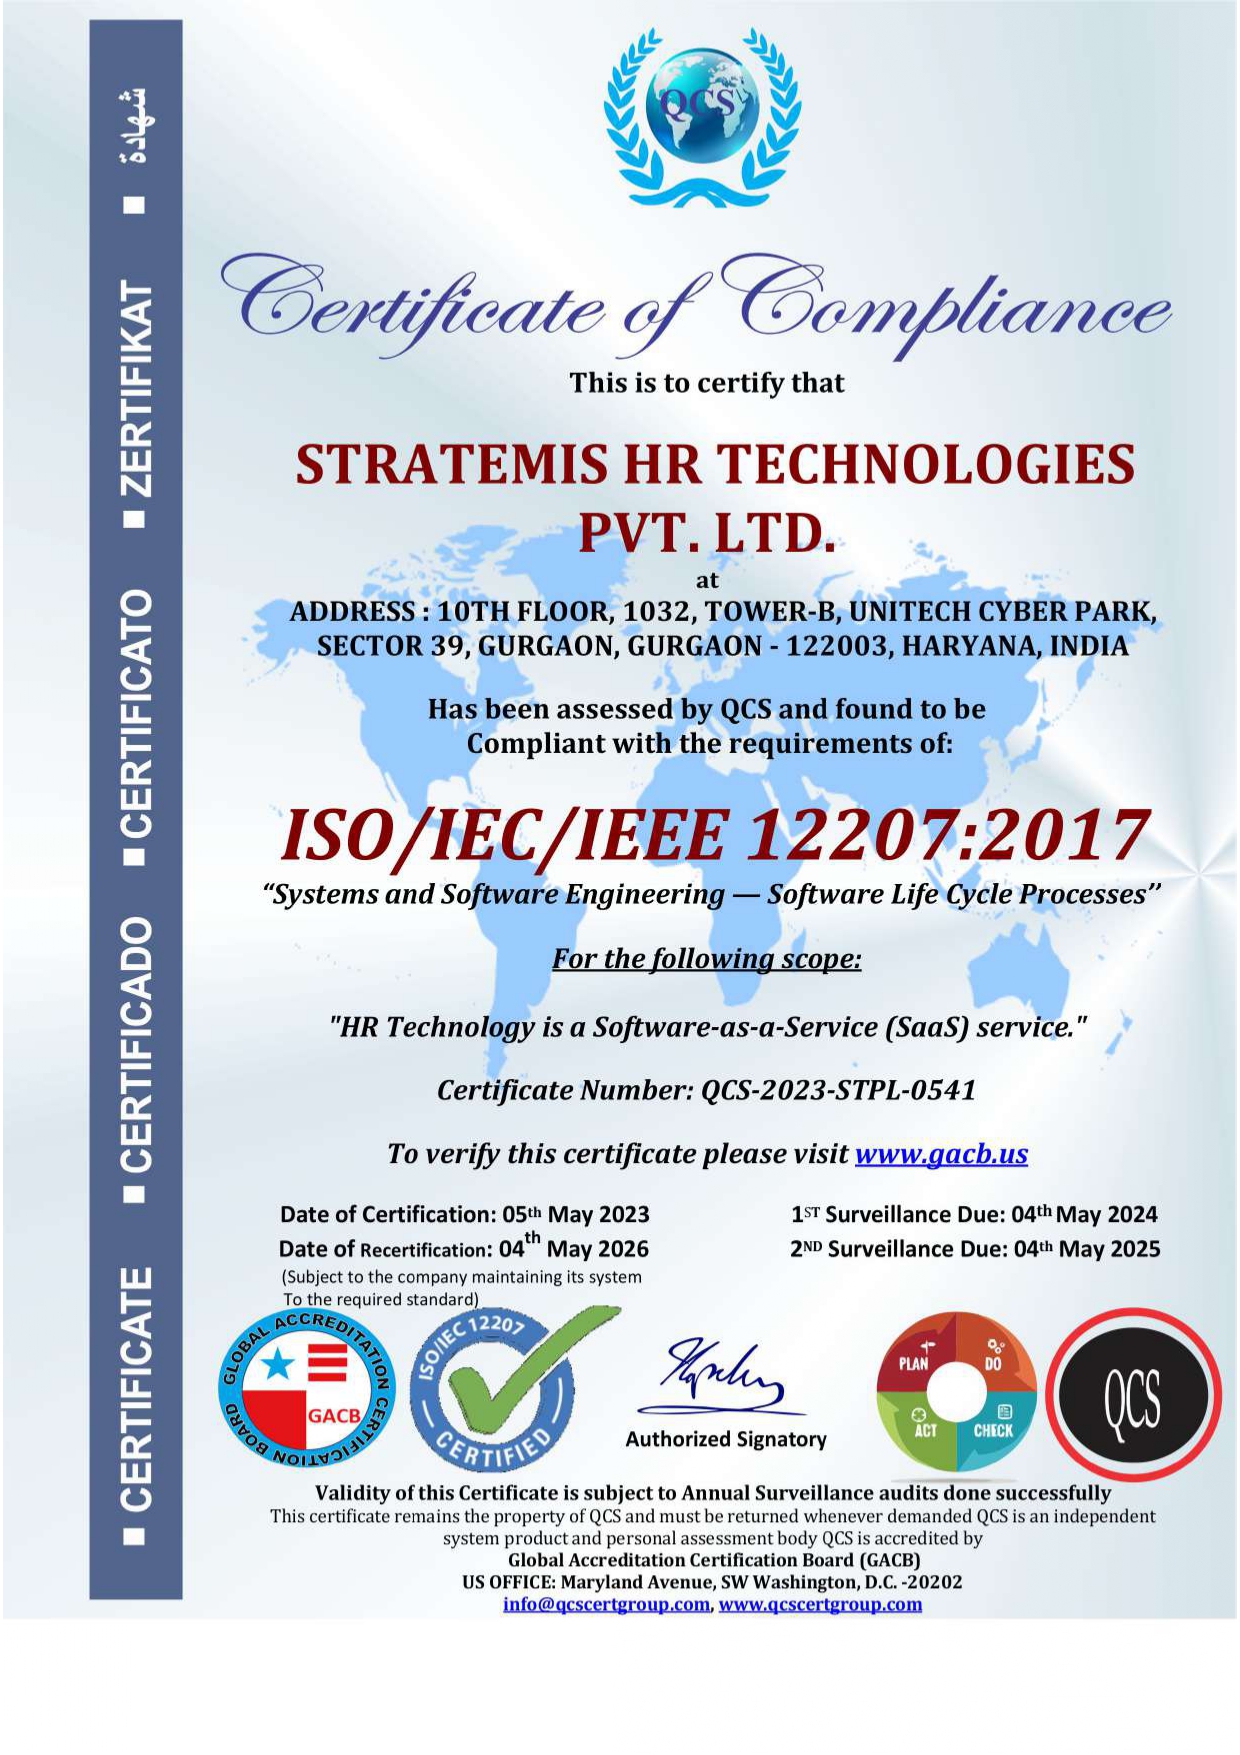 ISO/IEC/IEEE 12207:2017 Certification